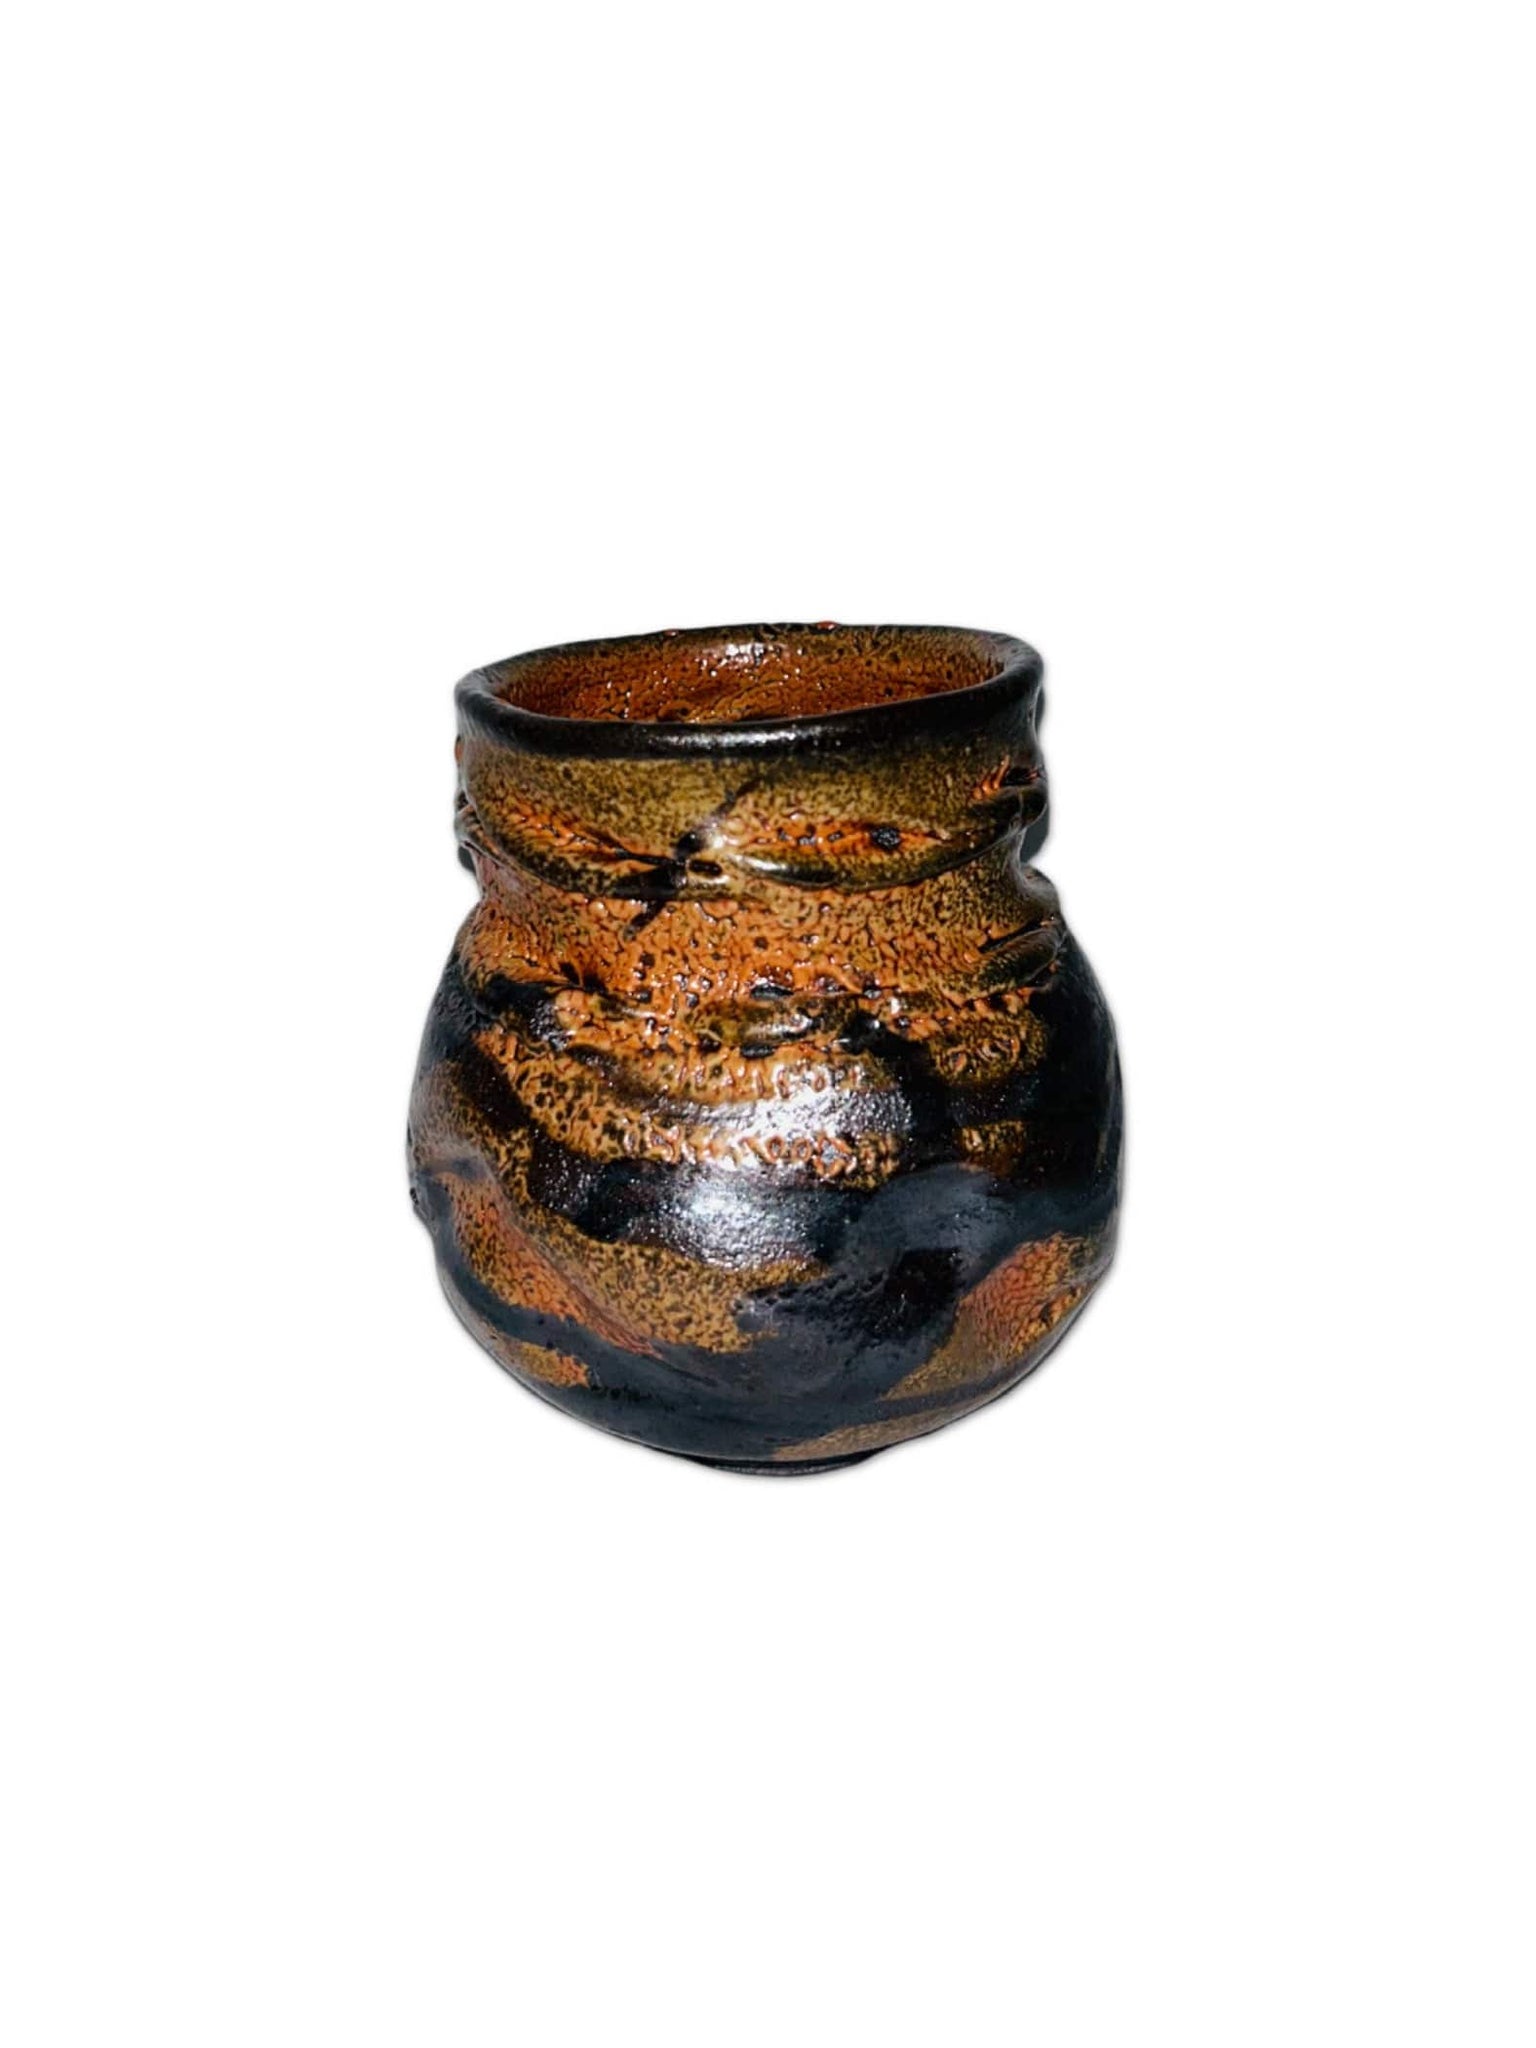 Case Study Objects Brown and orange glazed pottery vase/bowl La Bomba Floristry Vancouver Canada